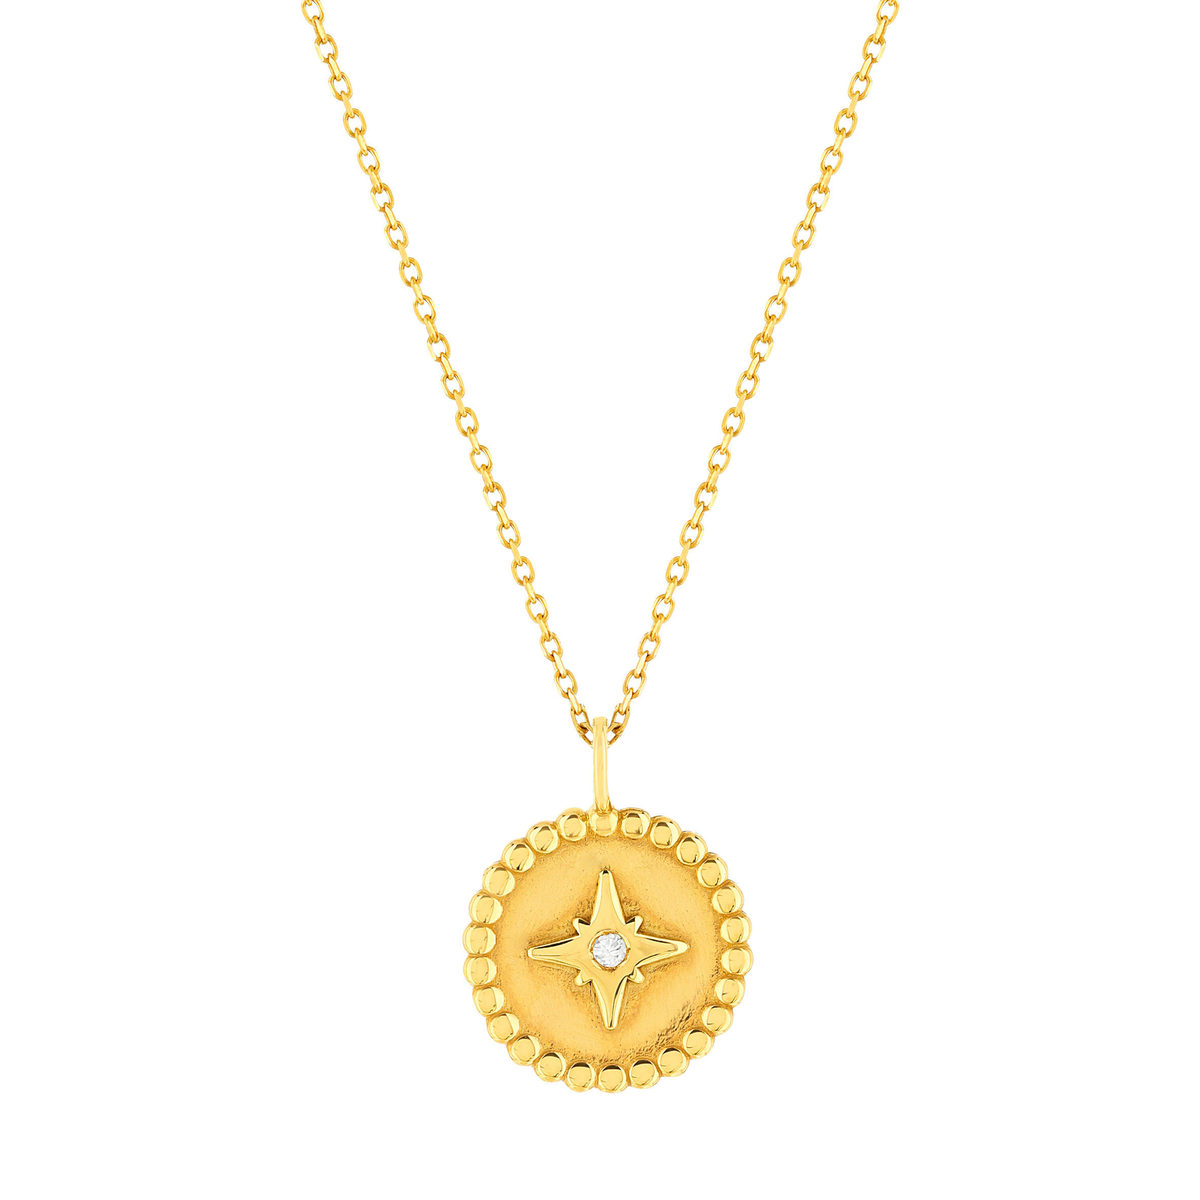 Collier or jaune 375 médaillon motif étoile zirconia 45 cm